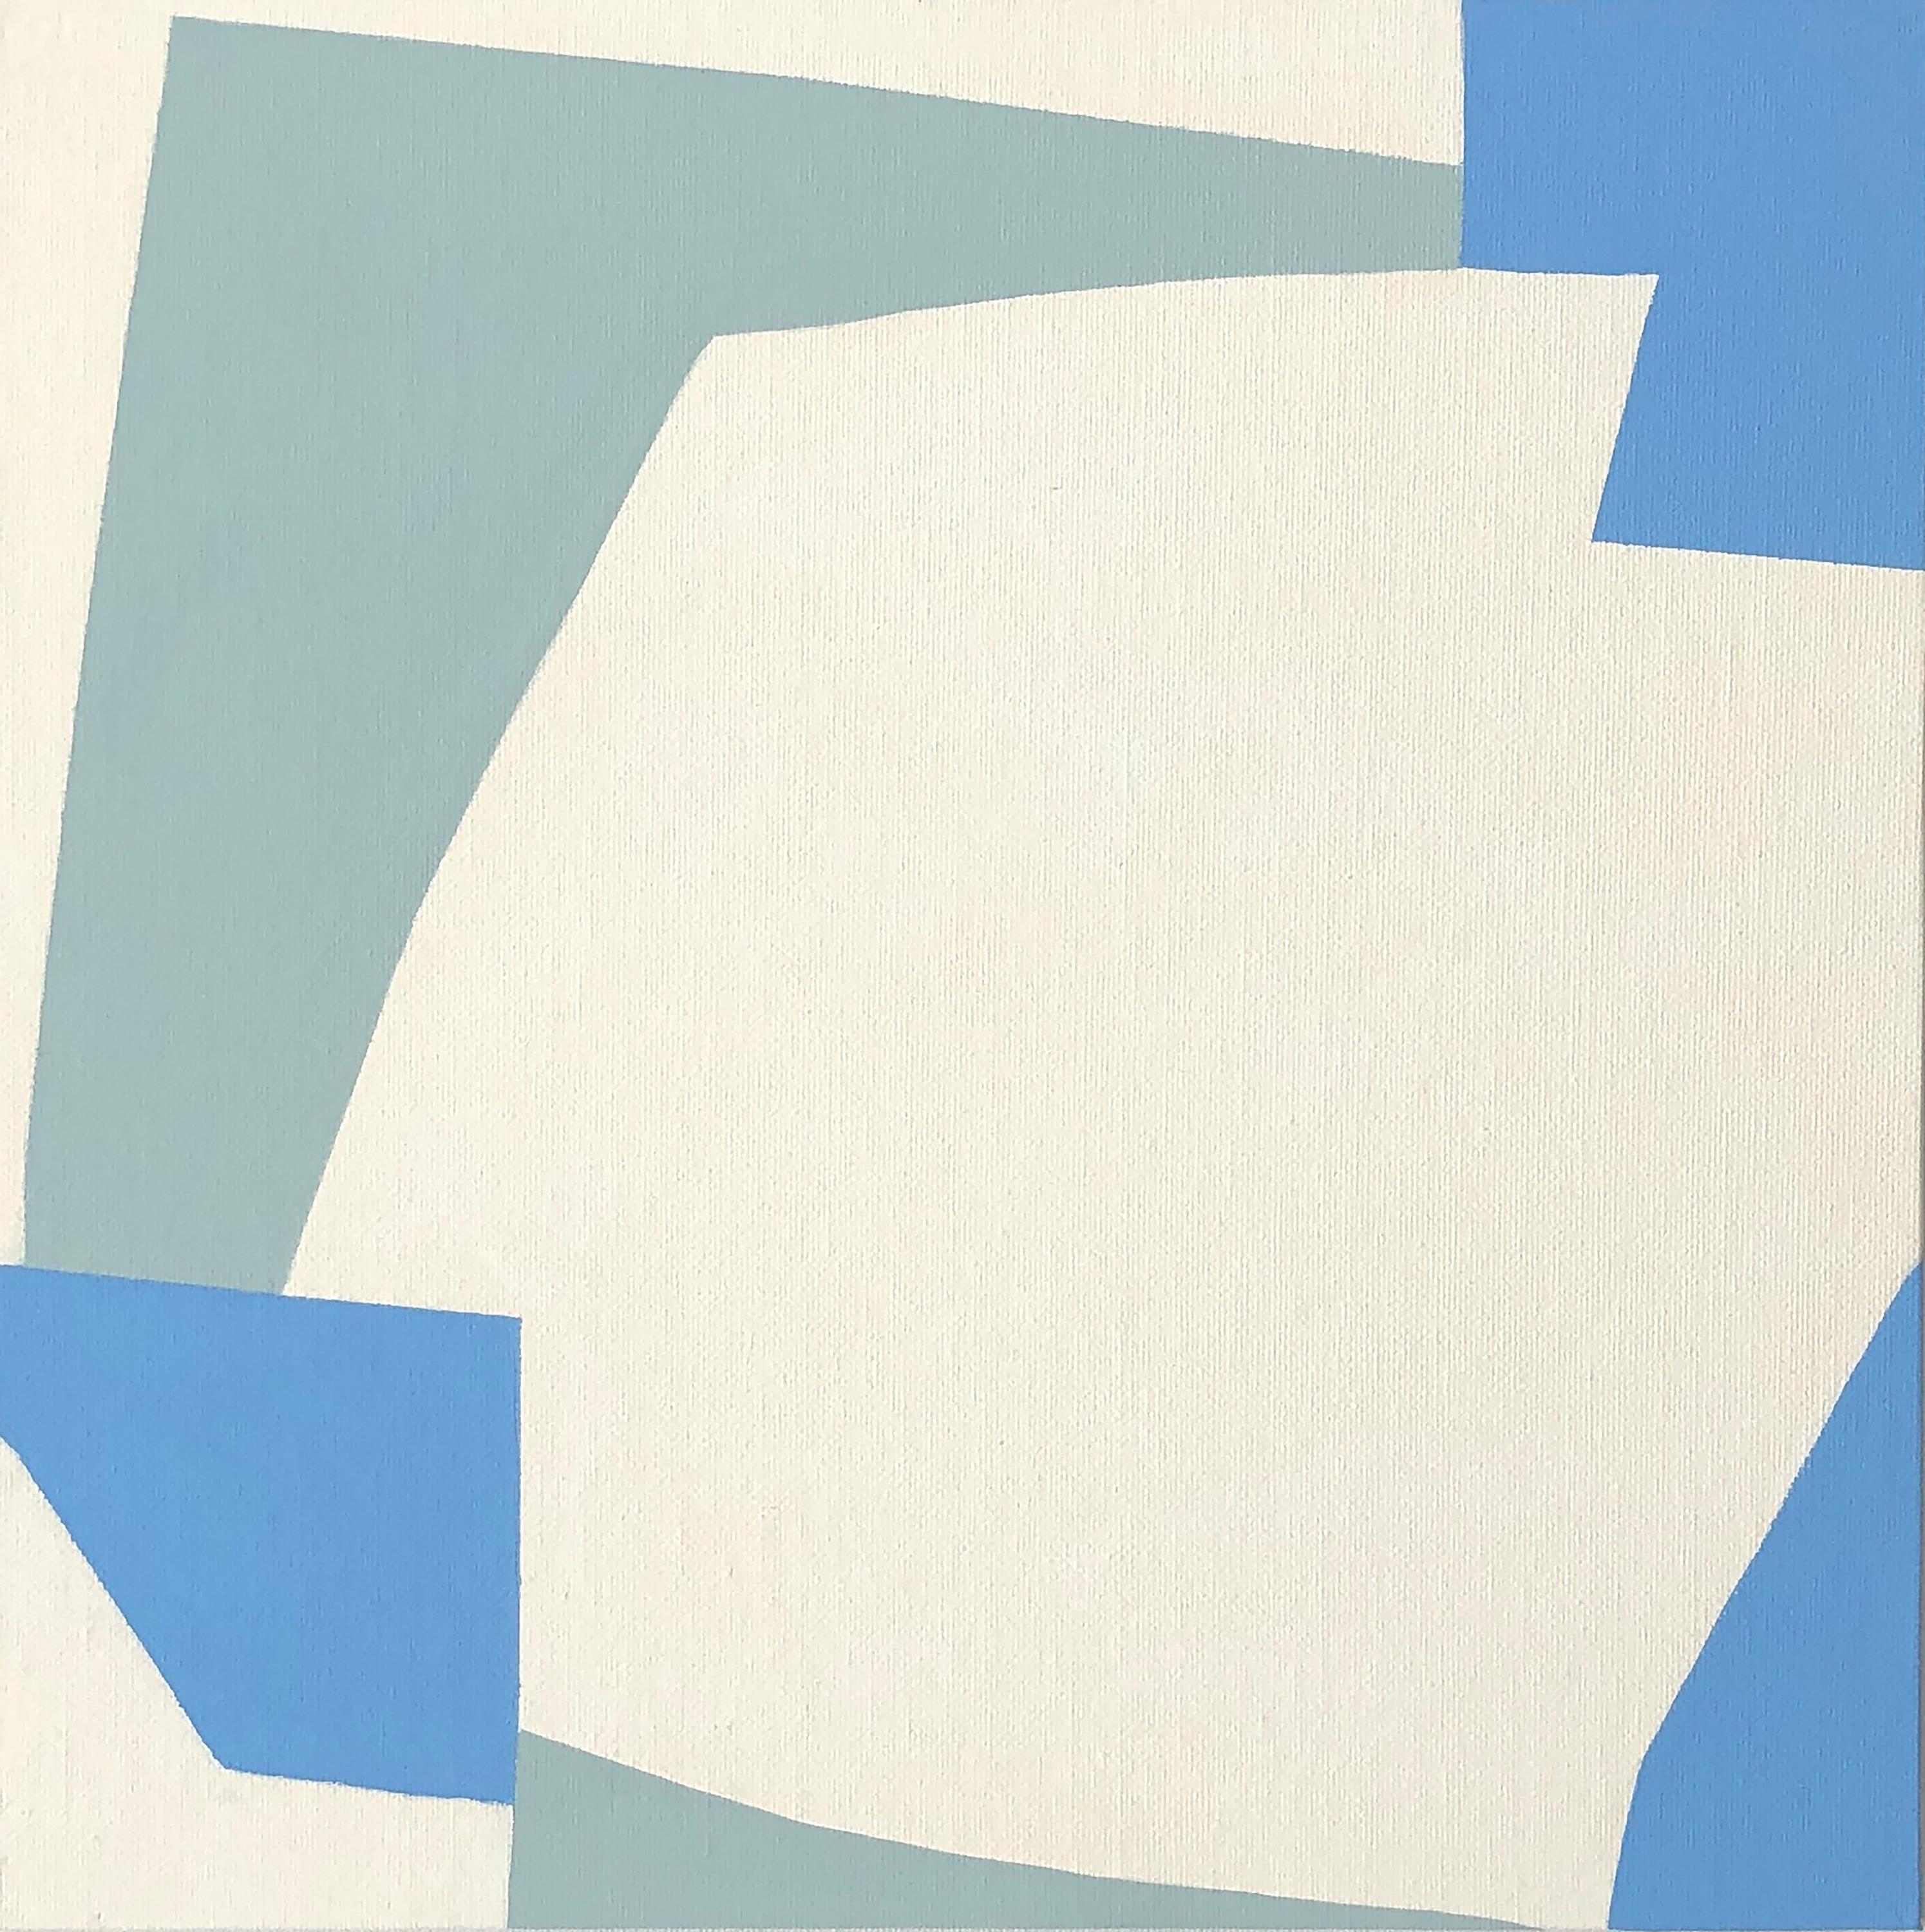 Ces 4 peintures abstraites sont inspirées du minimalisme, de l'art moderne et du hard edge.
Ces œuvres sont signées, datées et inclinées par l'Artistics au dos. Certificat d'authenticité signé.     
Le prix est pour les 4 pièces.
Livré dans une